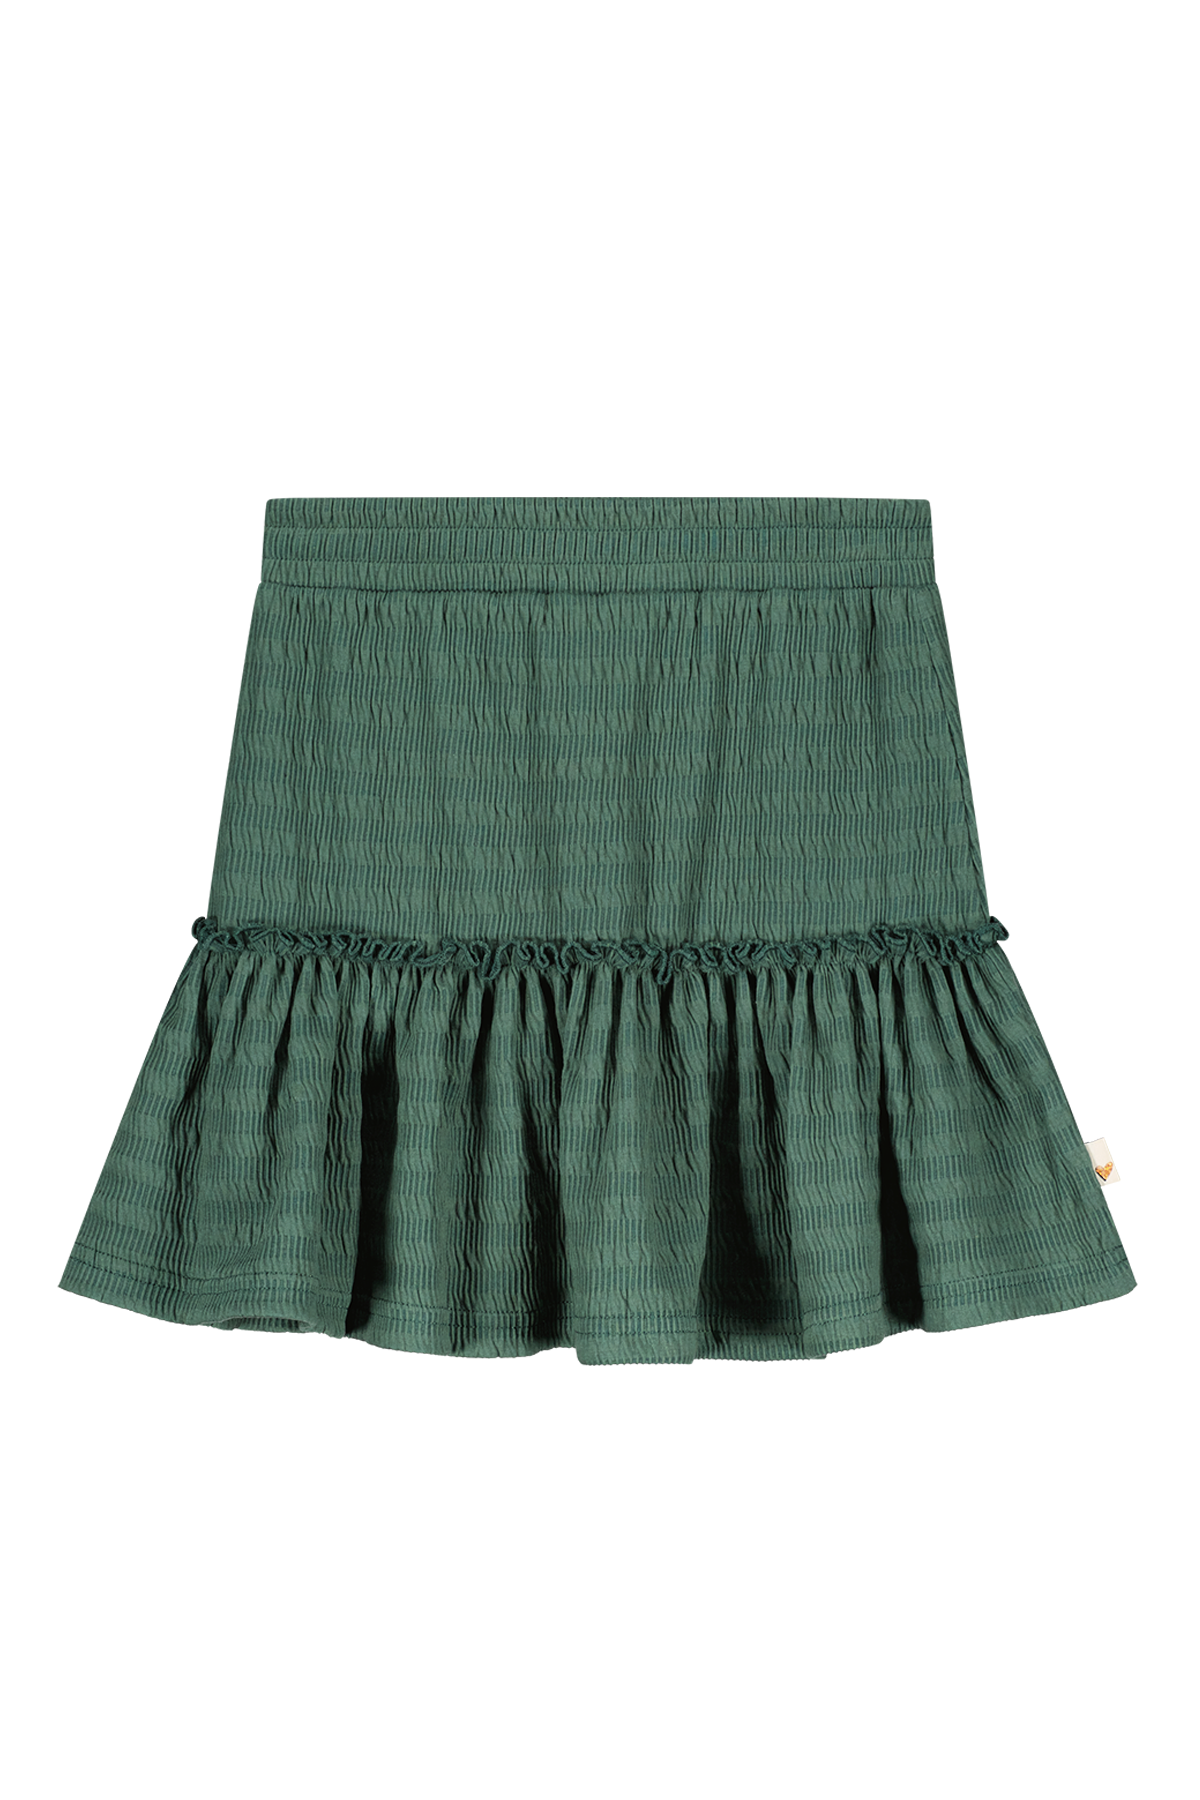 Girly structered skirt